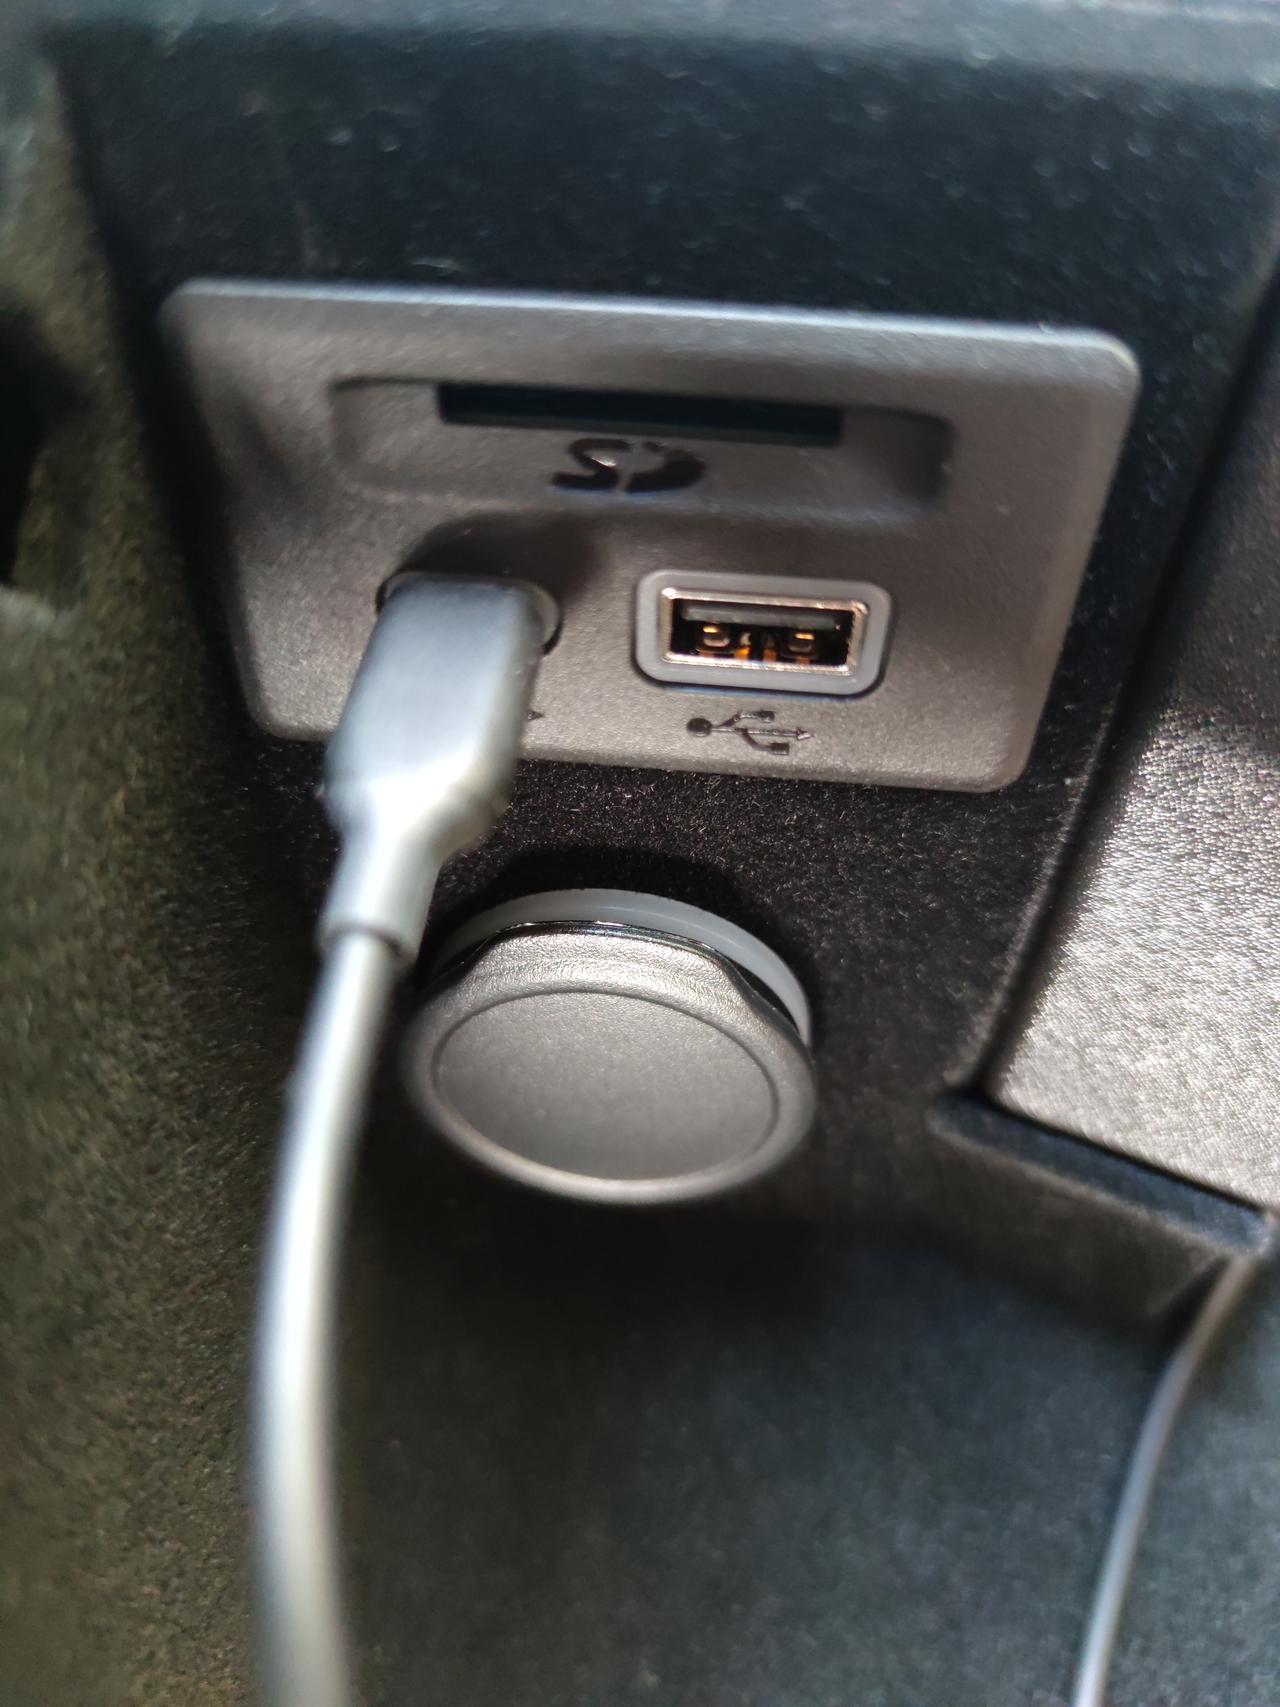 凯迪拉克CT5豪华版扶手箱里面有两个USB口，一个大口，一个type-c，手机插进type-c里可以充电，手机查到大口那